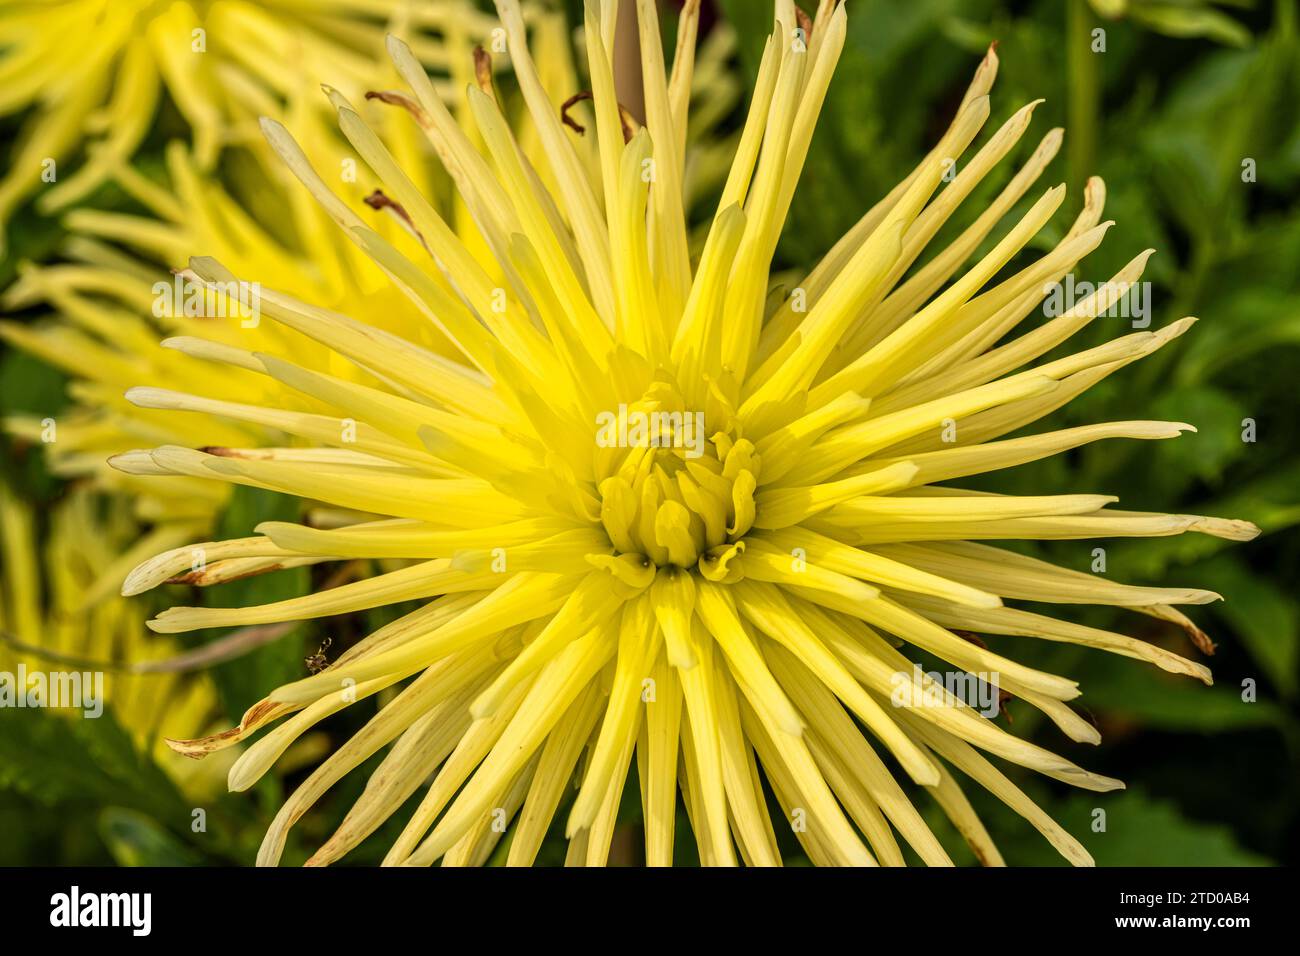 georgina (Dahlia ''Gryson's Yellow Spider', Dahlia Gryson's Yellow Spider), flower of cactus Dahlia, cultivar Gryson's Yellow Spider Stock Photo